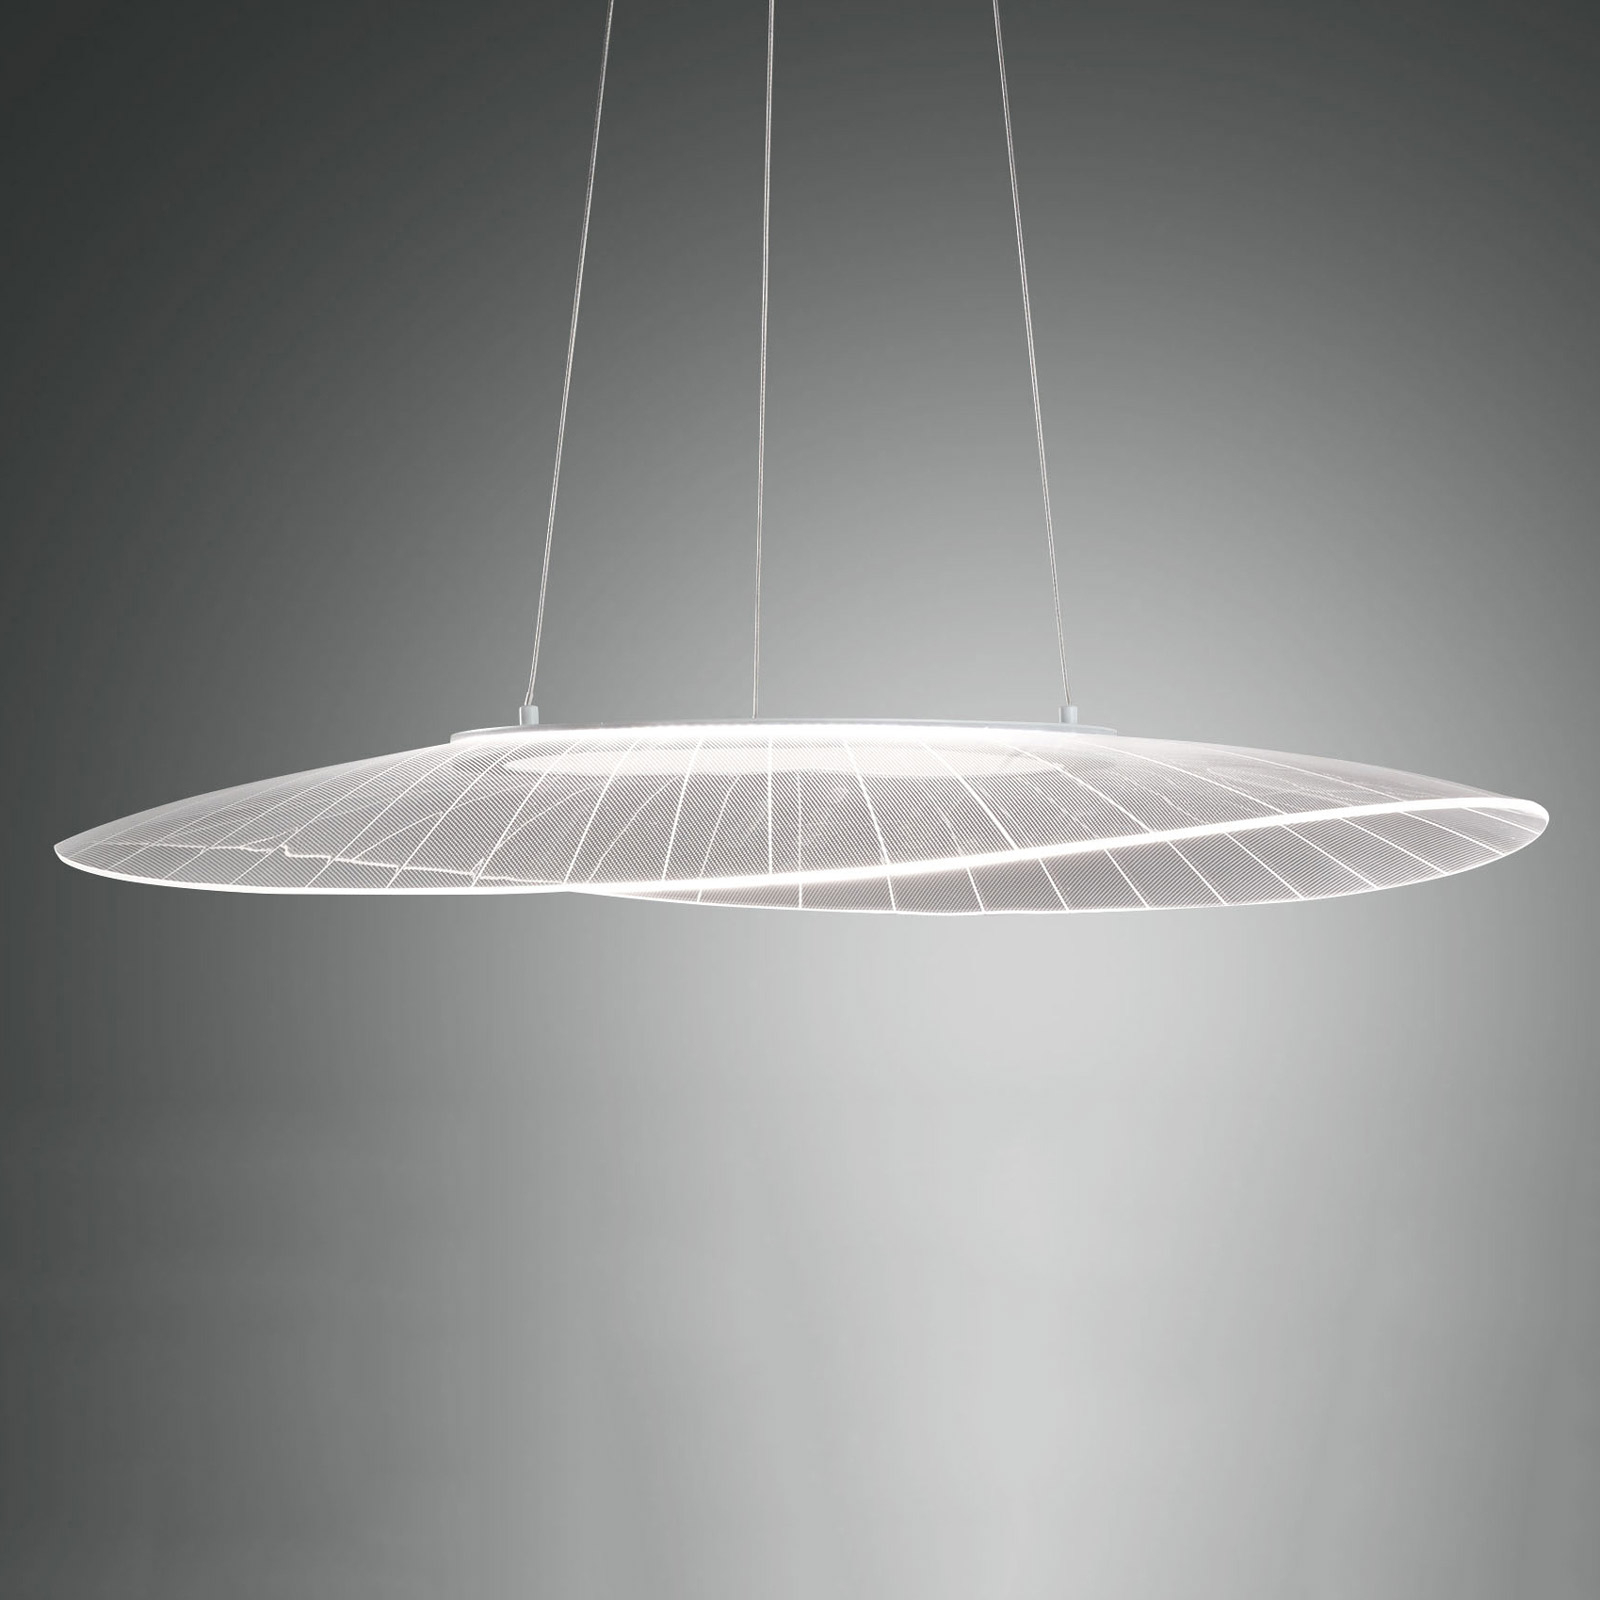 LED-riippuvalaisin Vela, valkoinen, soikea, 78 cm x 55 cm